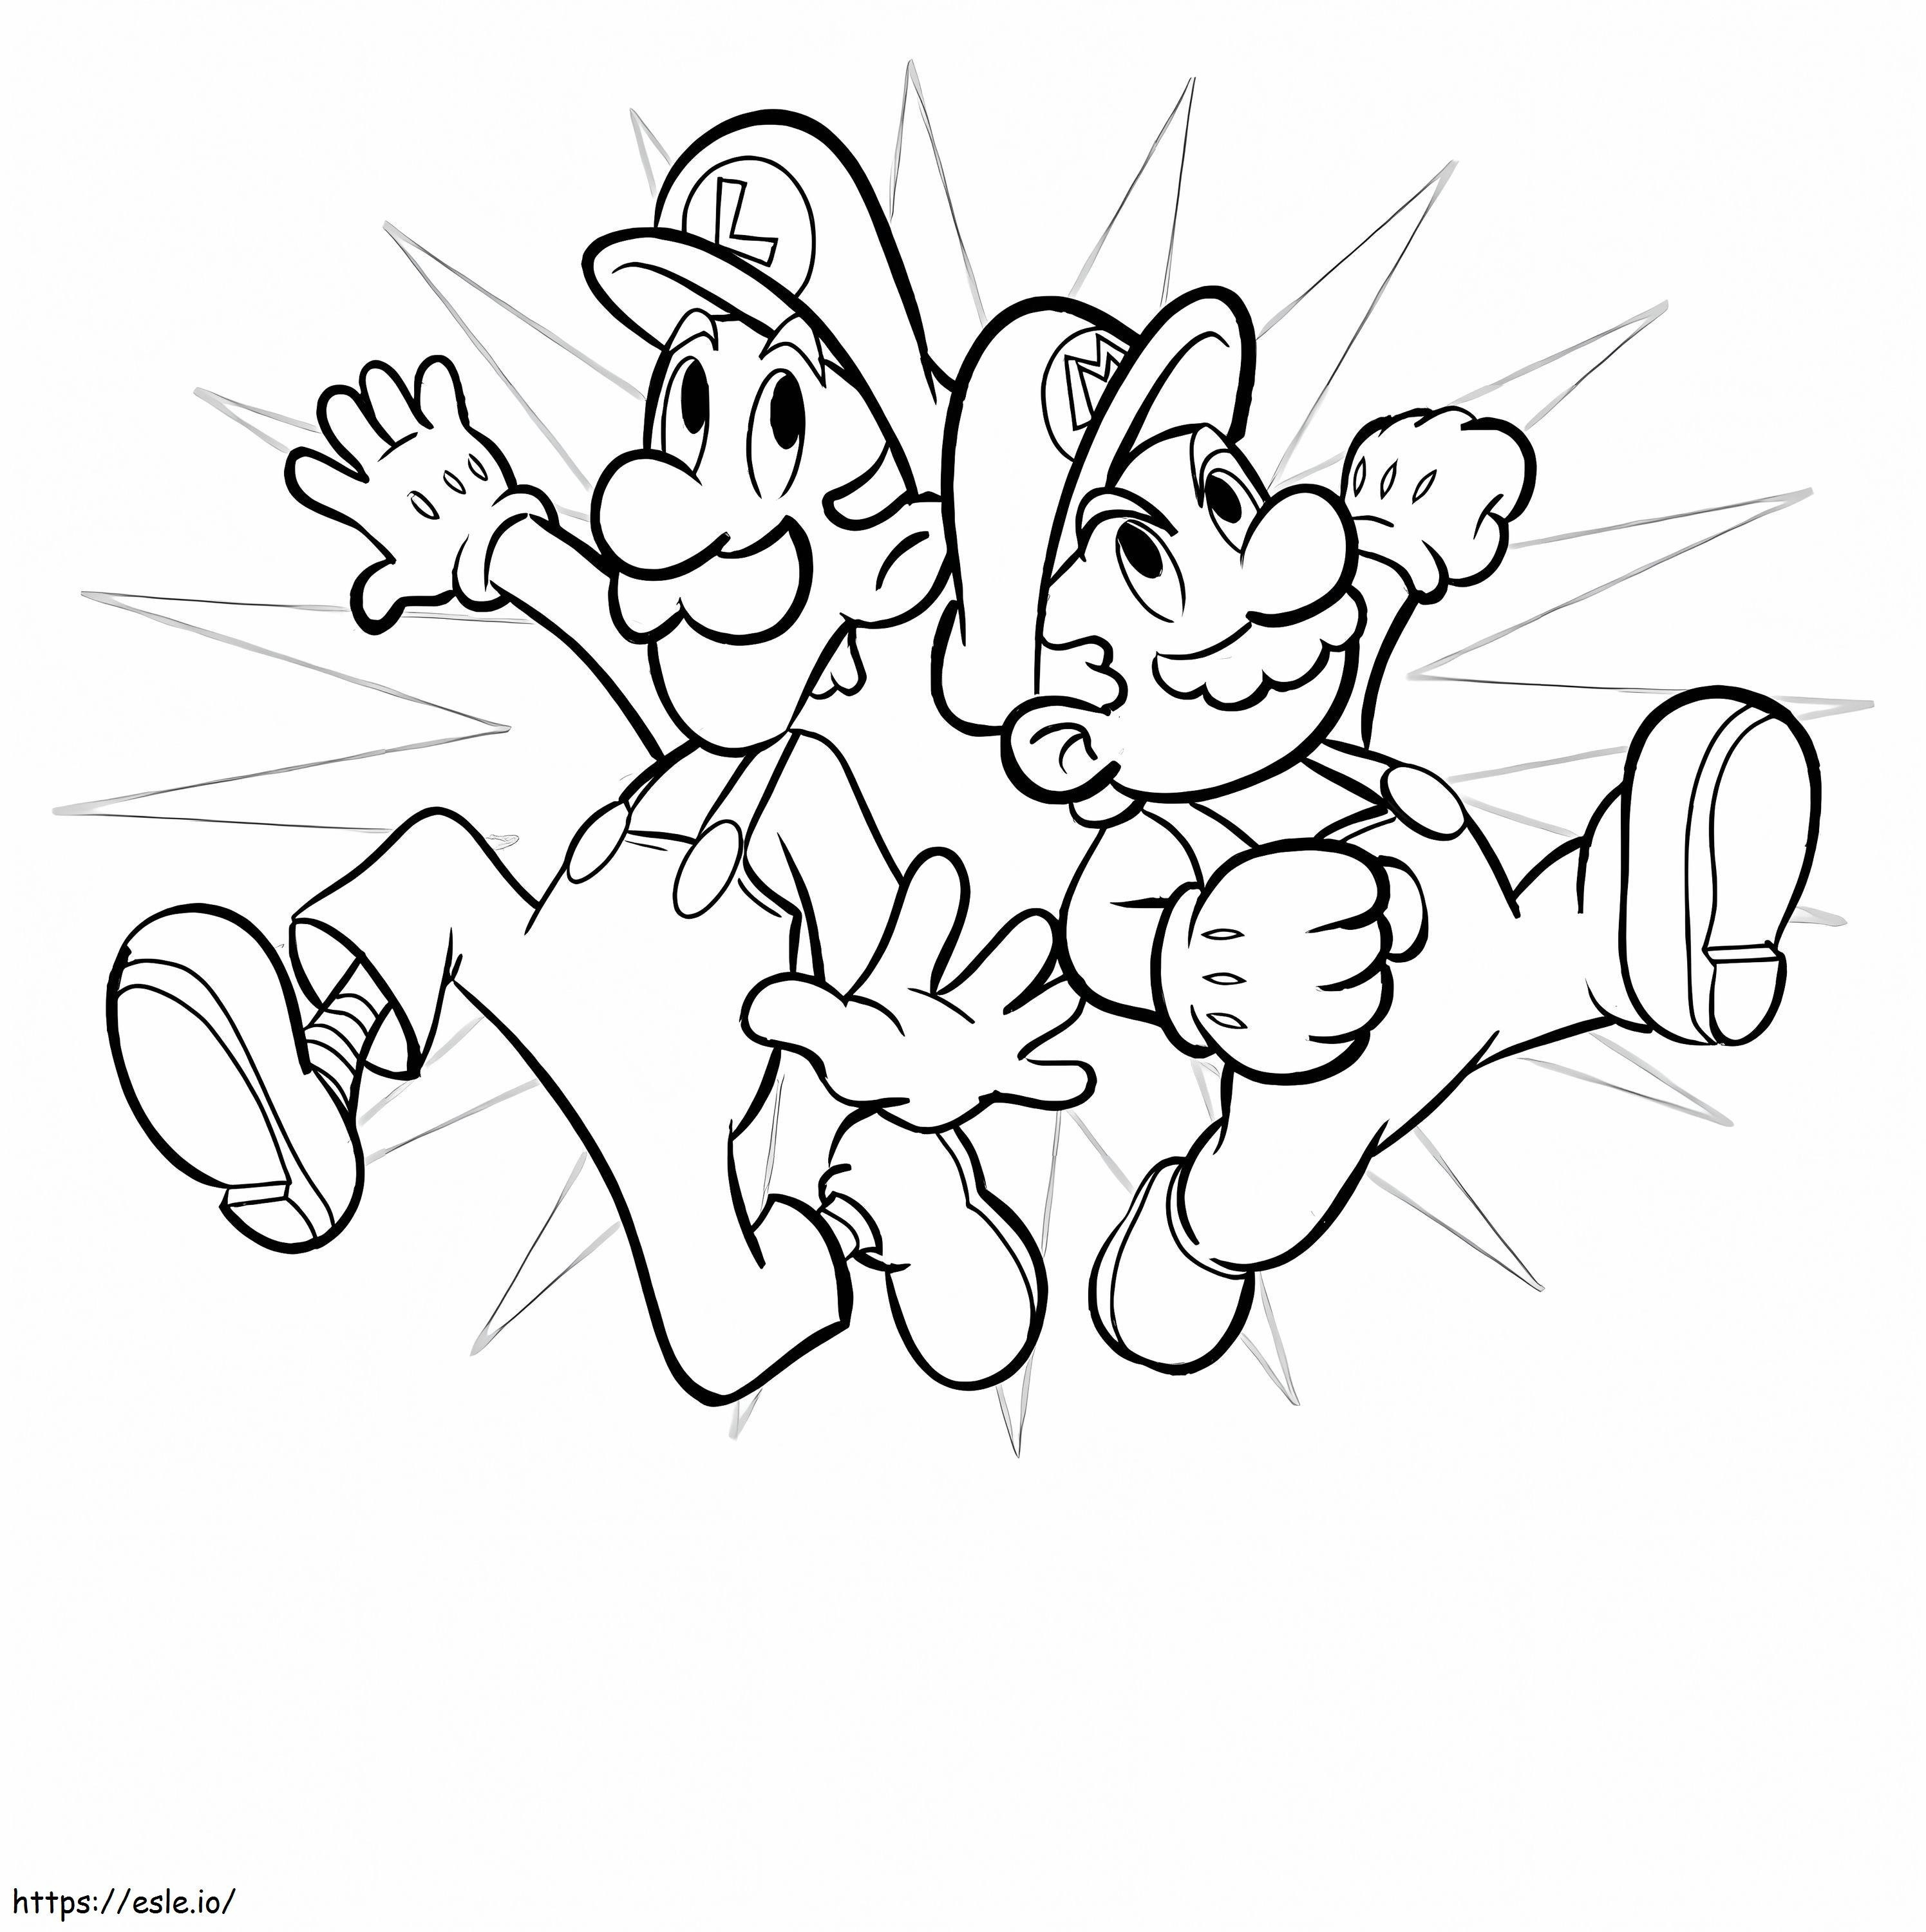 Netter Luigi und Mario ausmalbilder